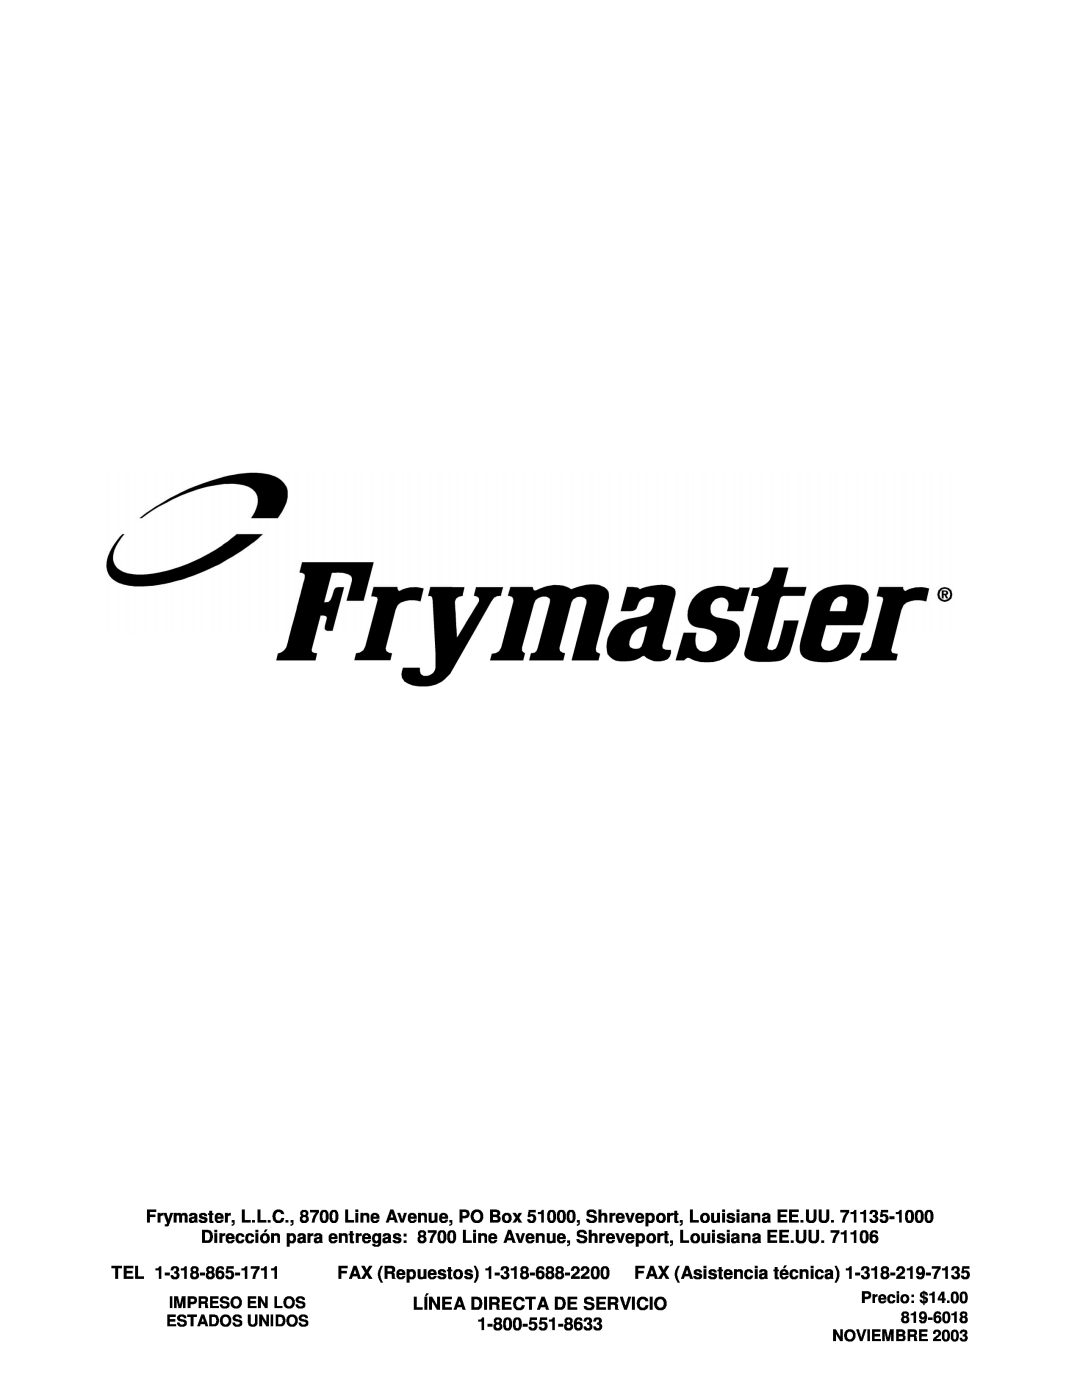 Frymaster 45 y manual Línea Directa De Servicio, 1-800-551-8633, Impreso En Los, Precio: $14.00, Estados Unidos, 819-6018 